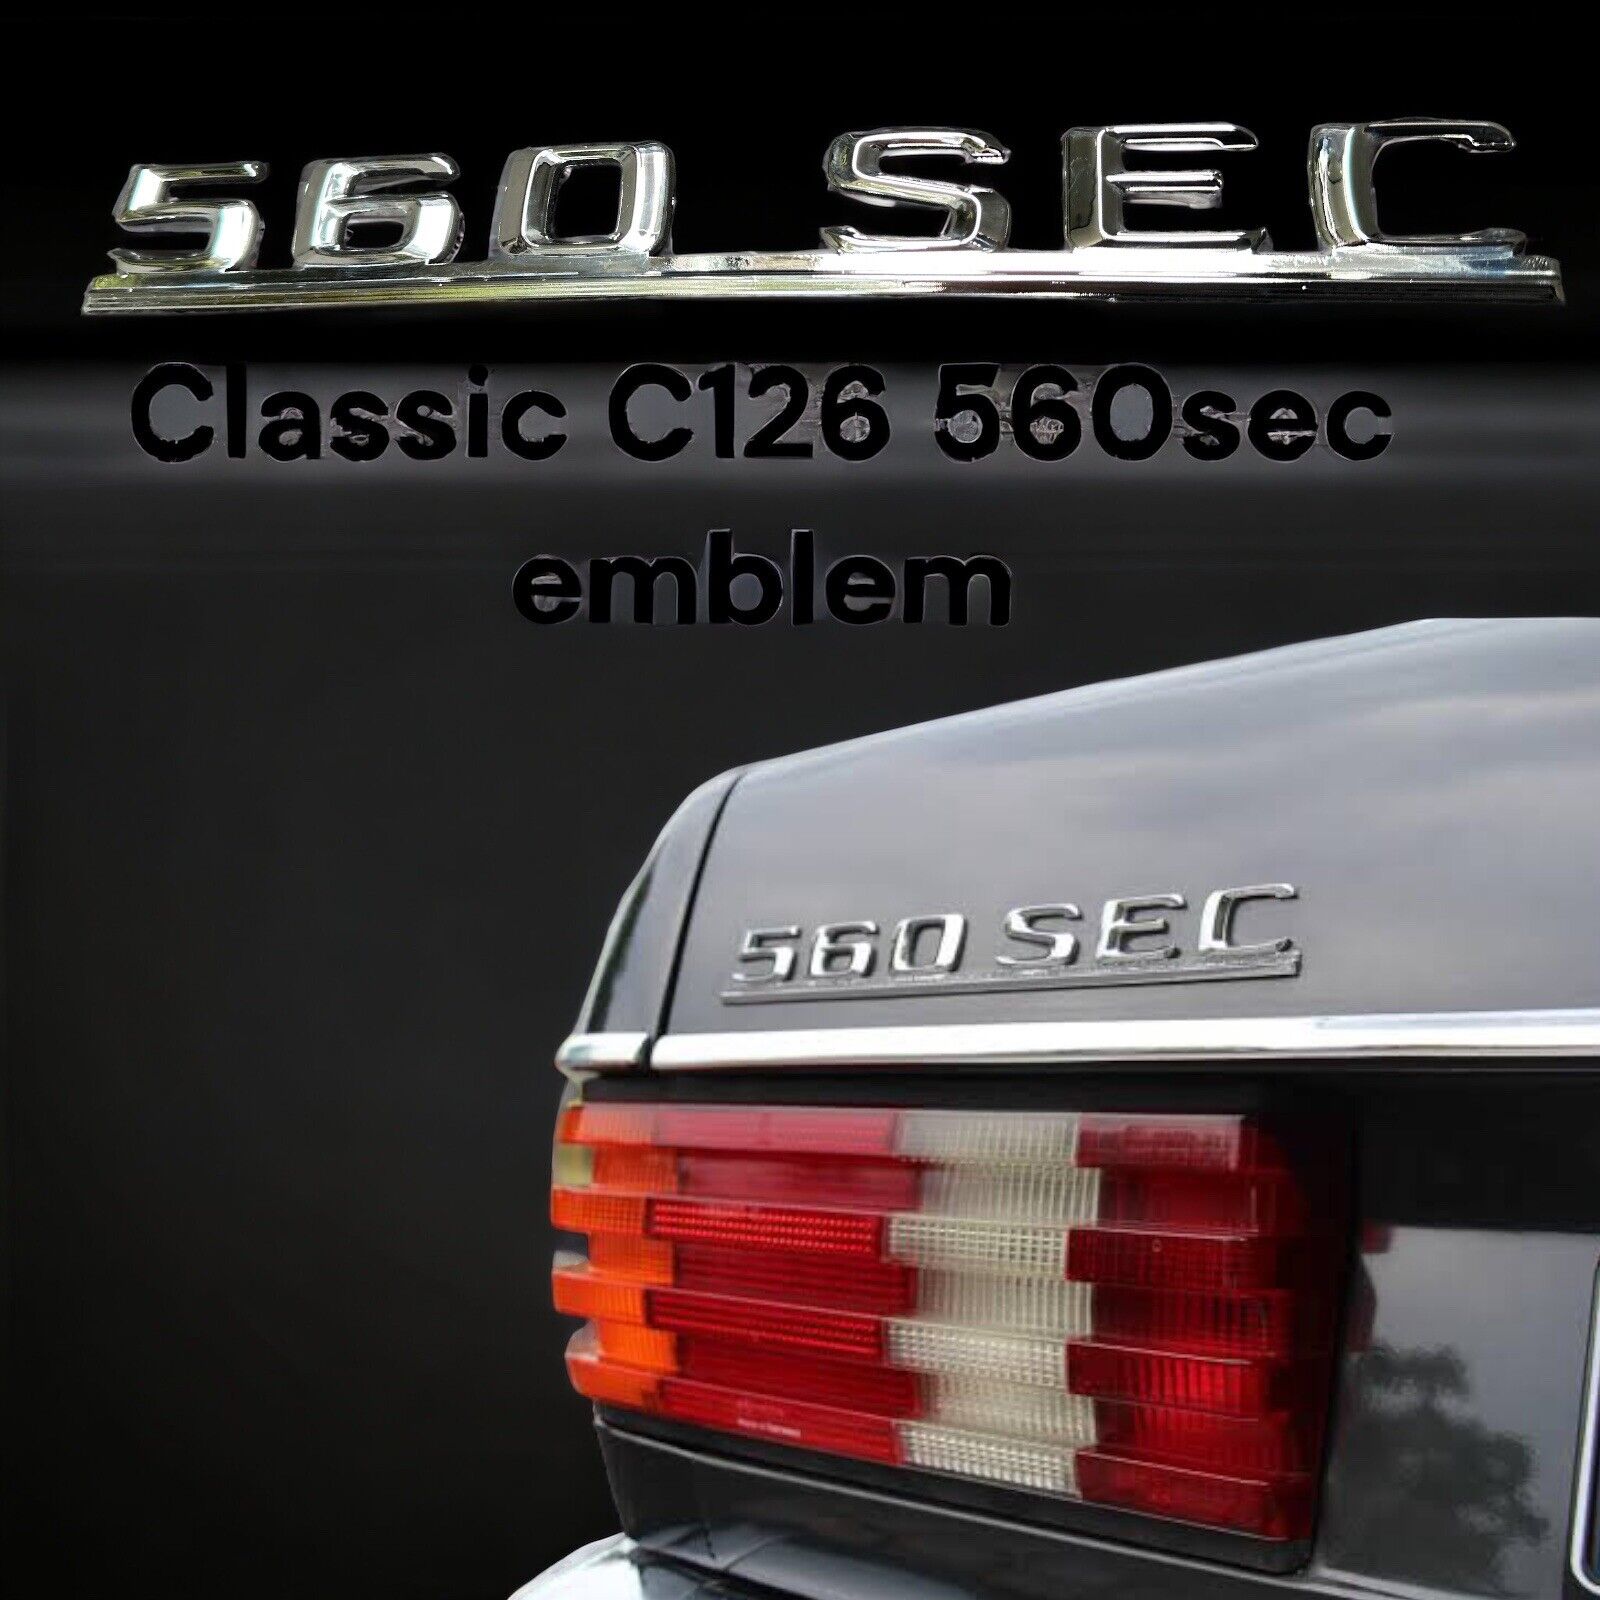 C126 For Mercedes trunk 560sec 560 Sec emblem chrome Ref Number: A1268172415